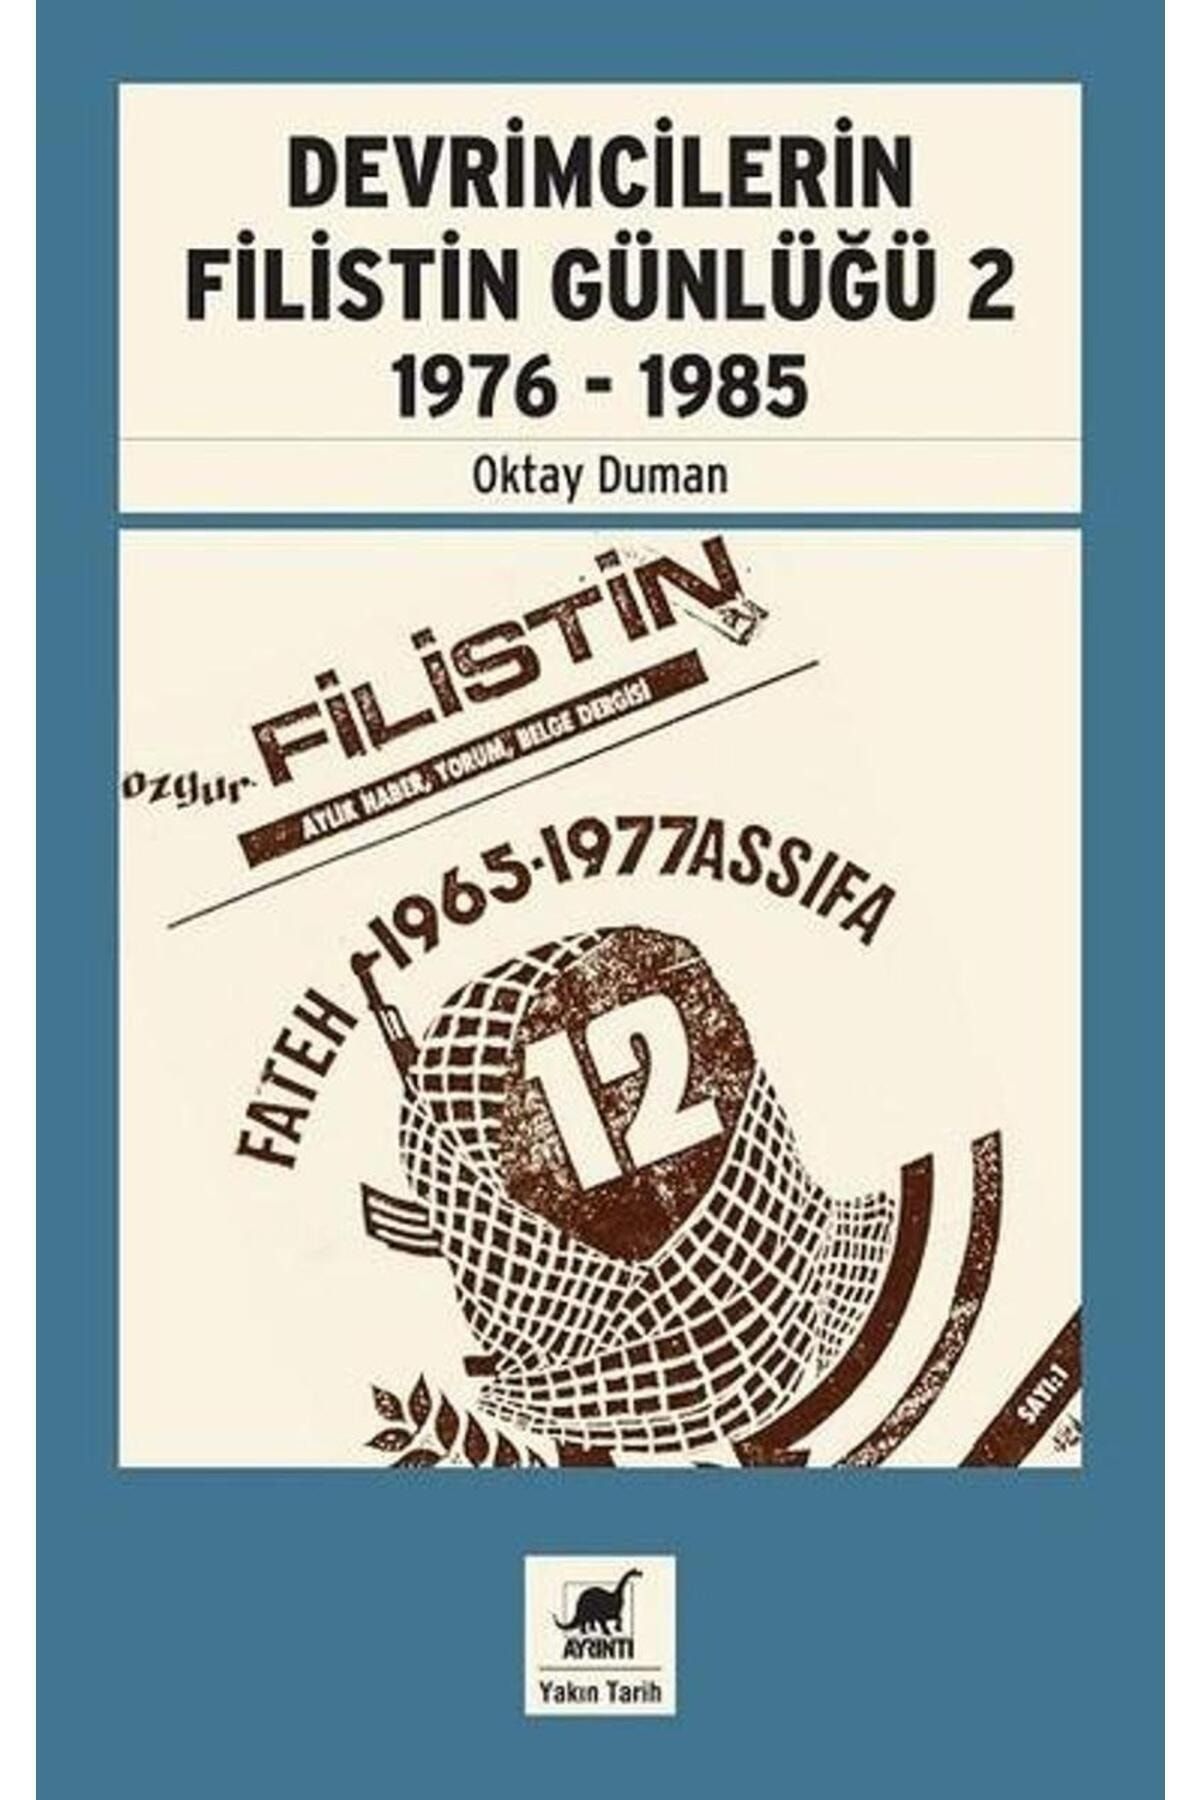 Ayrıntı Yayınları Devrimcilerin Filistin Günlüğü 2 (1976 - 1985)